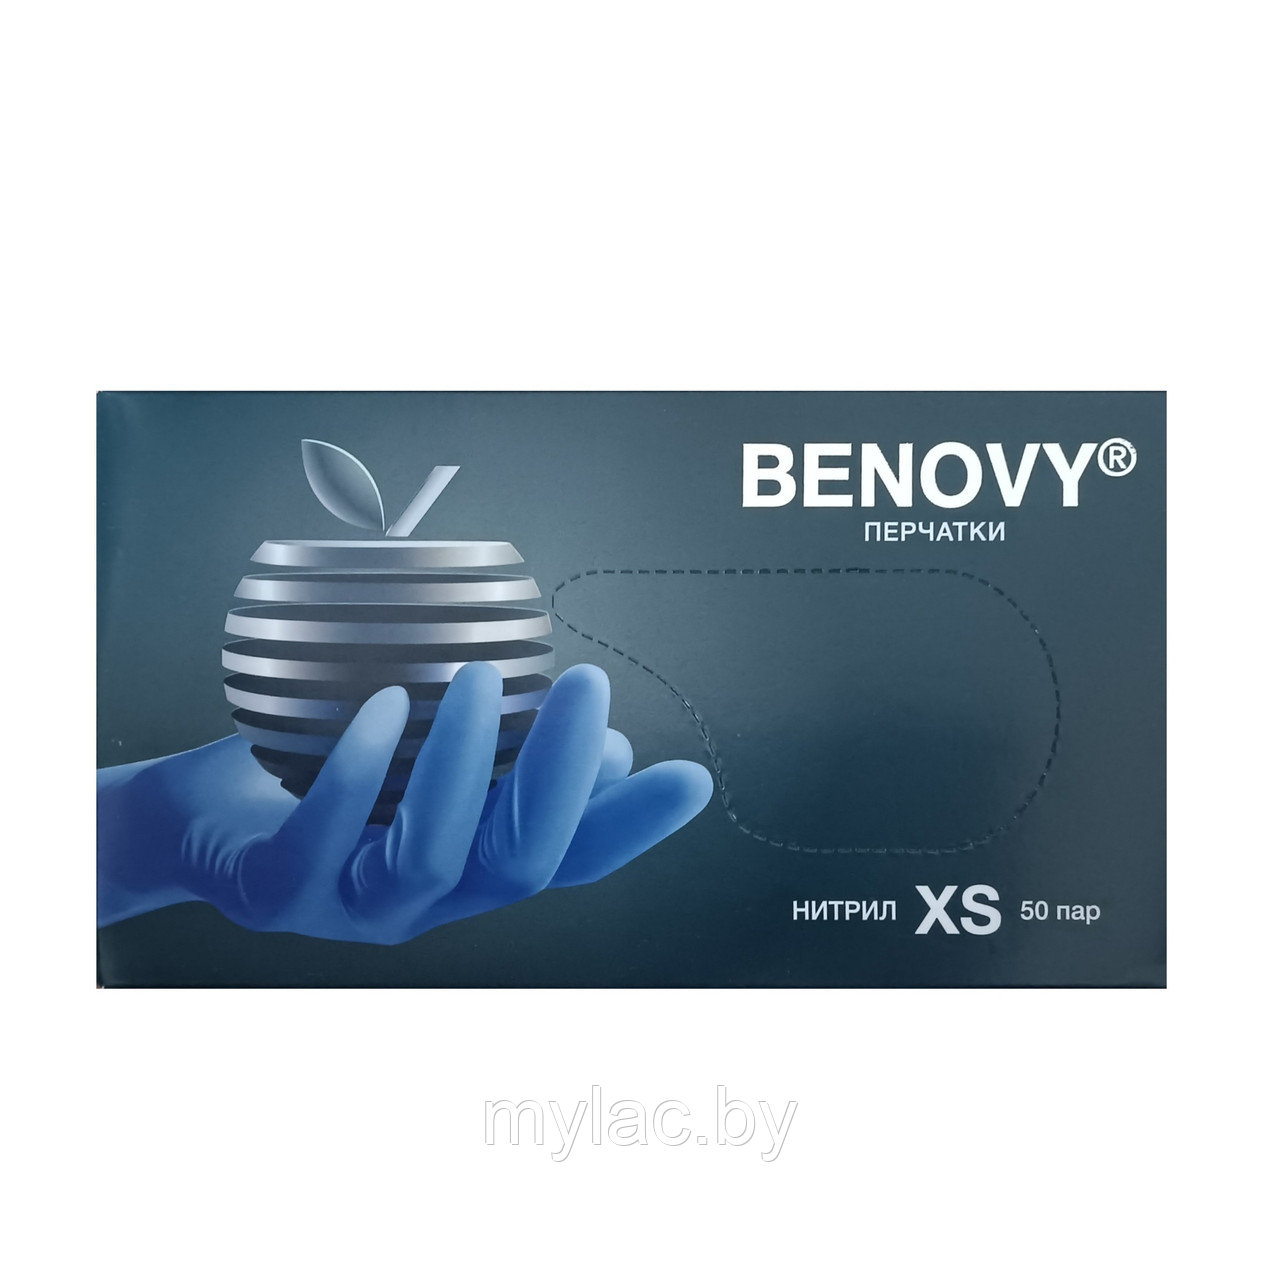 BENOVY Перчатки нитриловые сиренево-голубые текстурированные размер XS 50 пар (100 шт.)